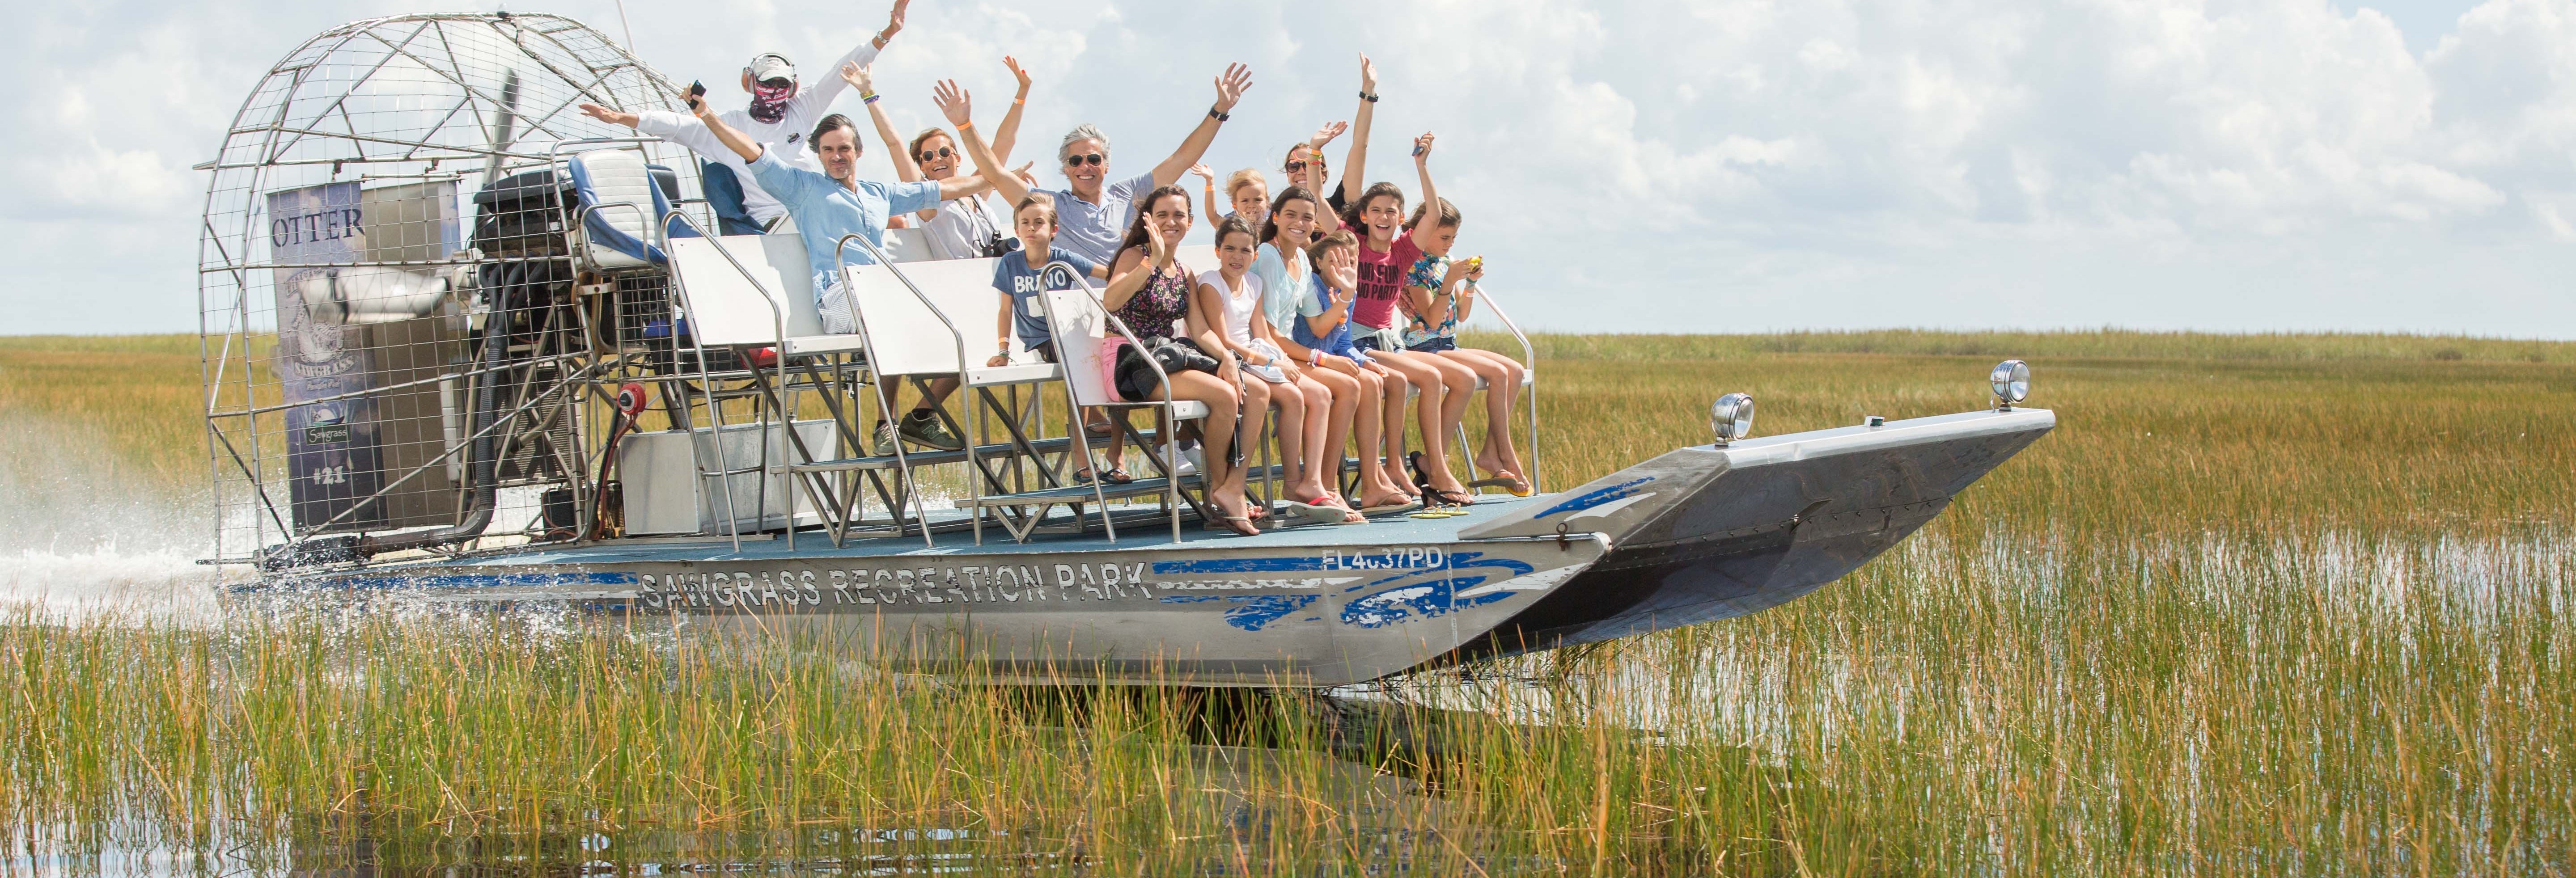 Paseo privado en aerodeslizador por los Everglades